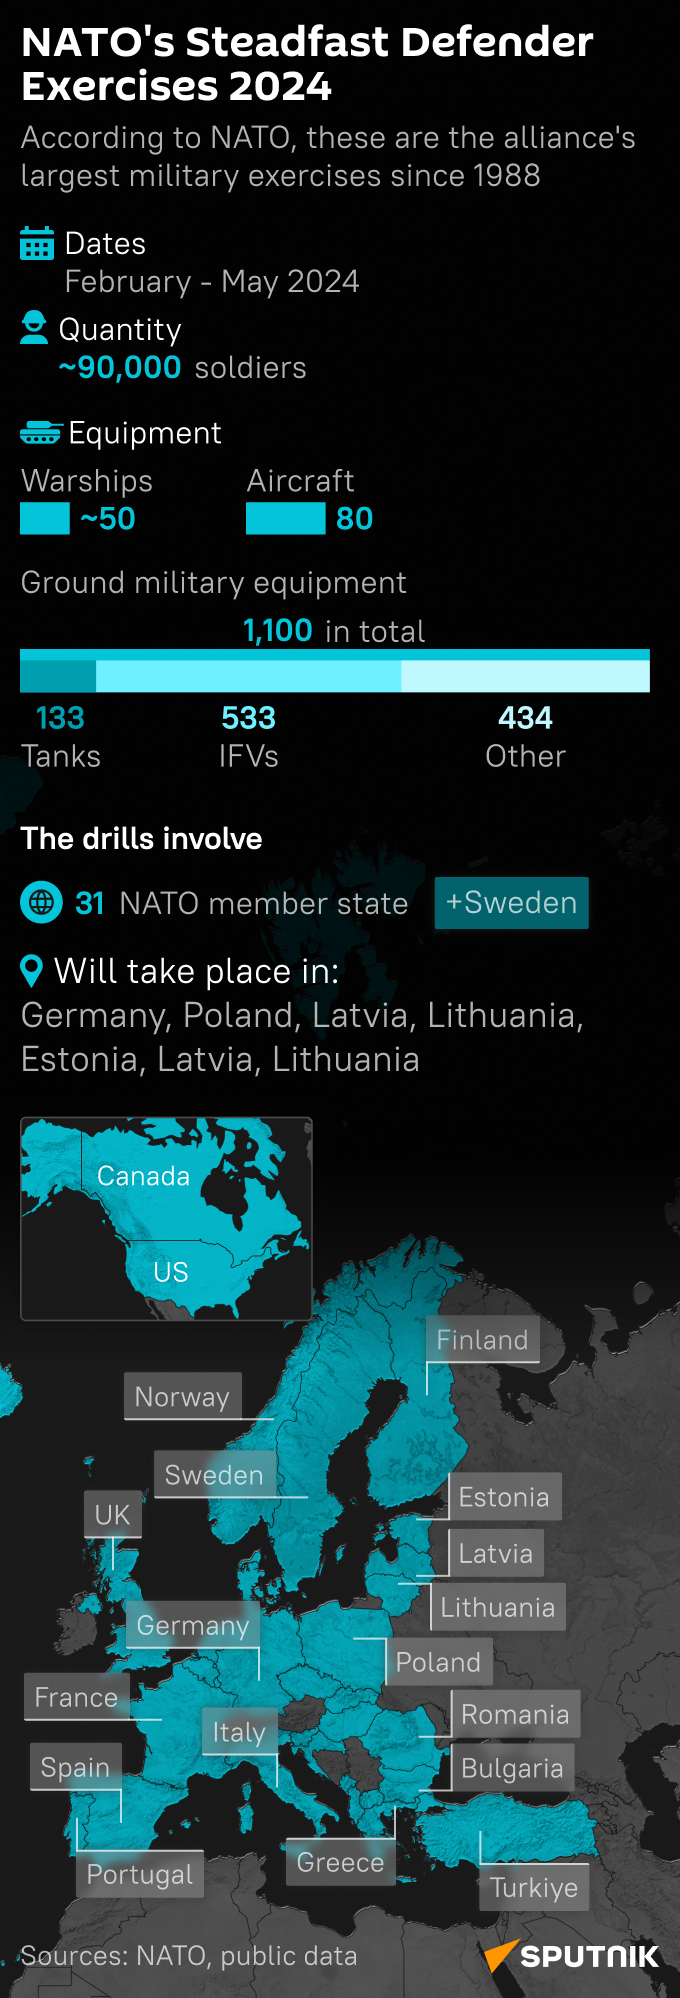 NATO Steadfast Defender Exercise 2024 - Sputnik International